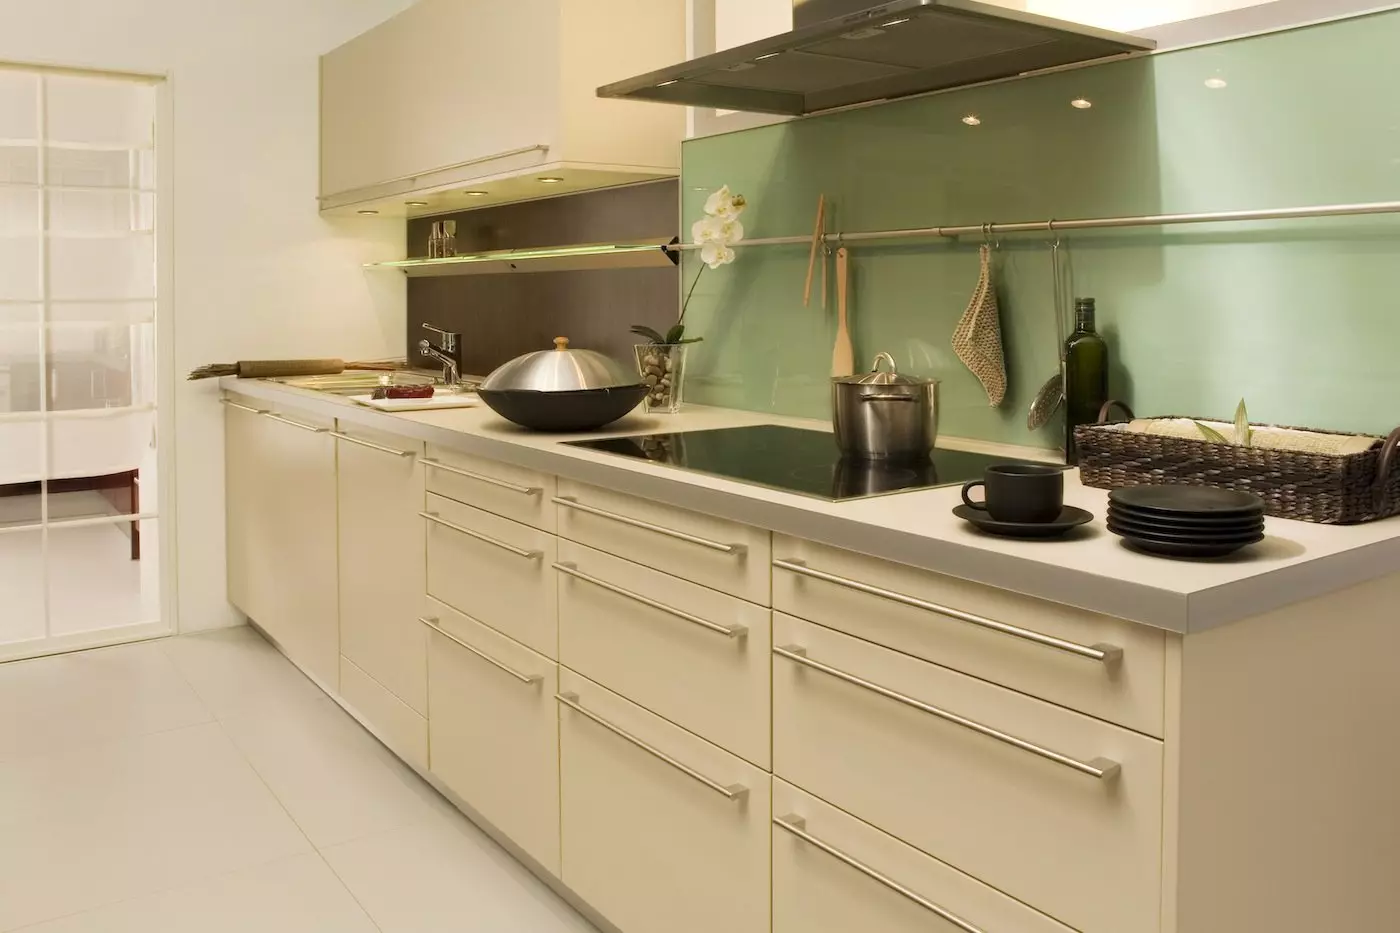 Kjøkken Ivory (64 bilder): Utvalg av kjøkkenhodesett Farge elfenben og andre nyanser i interiøret, design kjøkken i klassisk stil og andre retninger 21105_49